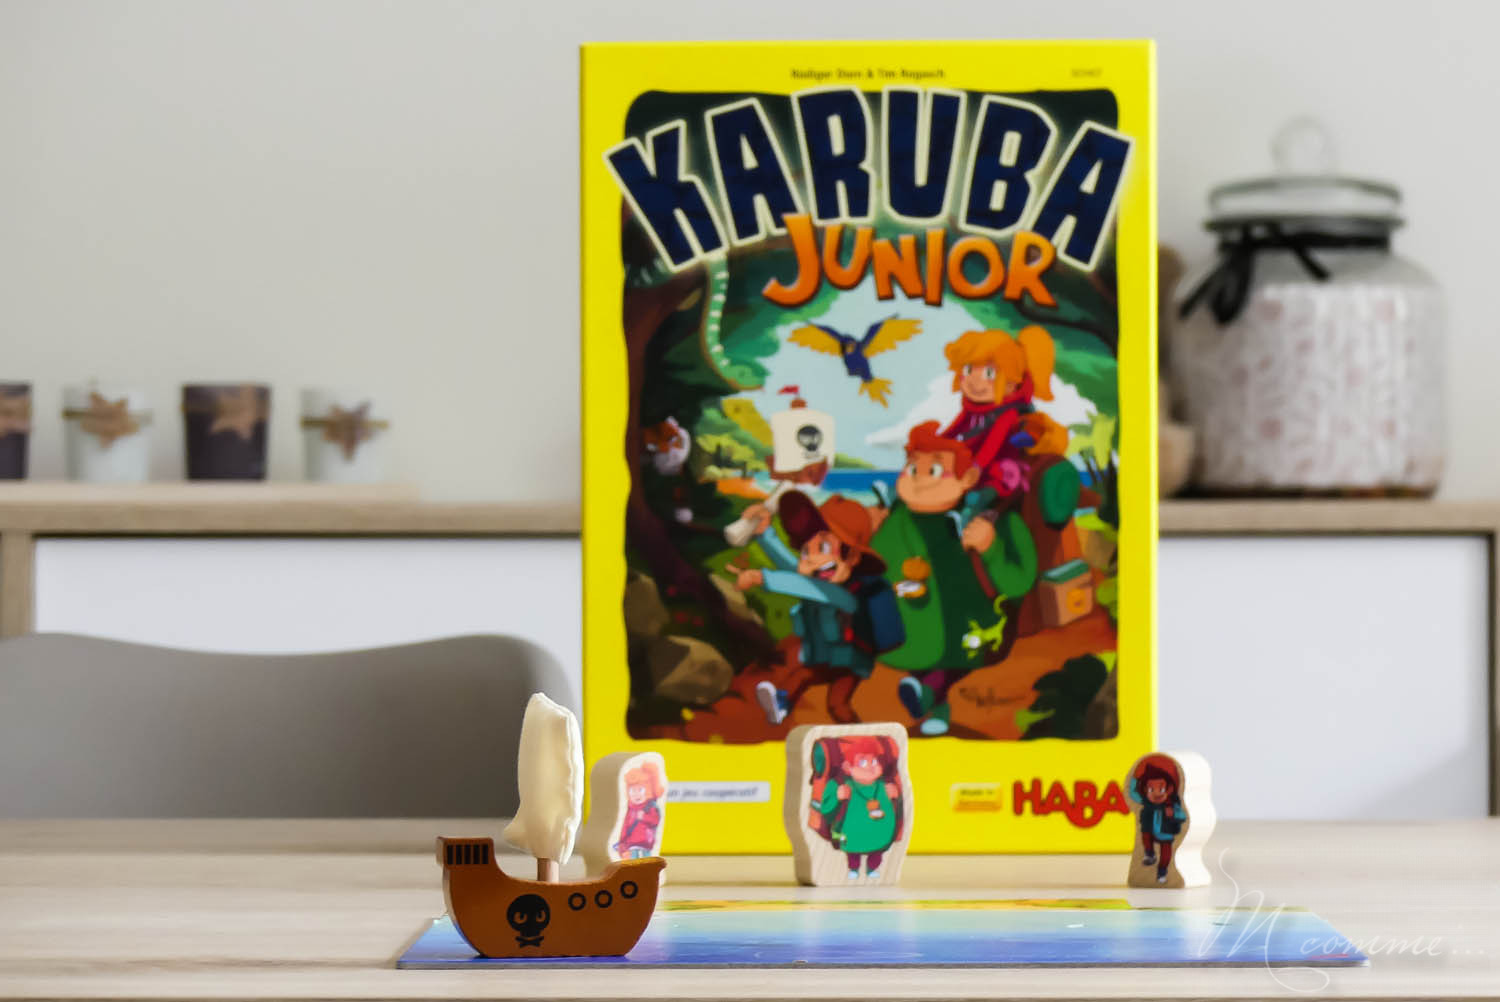 Karuba junior est un jeu stratégique et collaboratif pour les enfants dès 4 ans. Partez à l’aventure, et tentez de trouver les trésors avant l’arrivée des pirates ! #jeu #jeudesociete #jeucollaboratif #jeustrategique #jeuenfants #haba #karuba #karubajunior #jouerenfamille